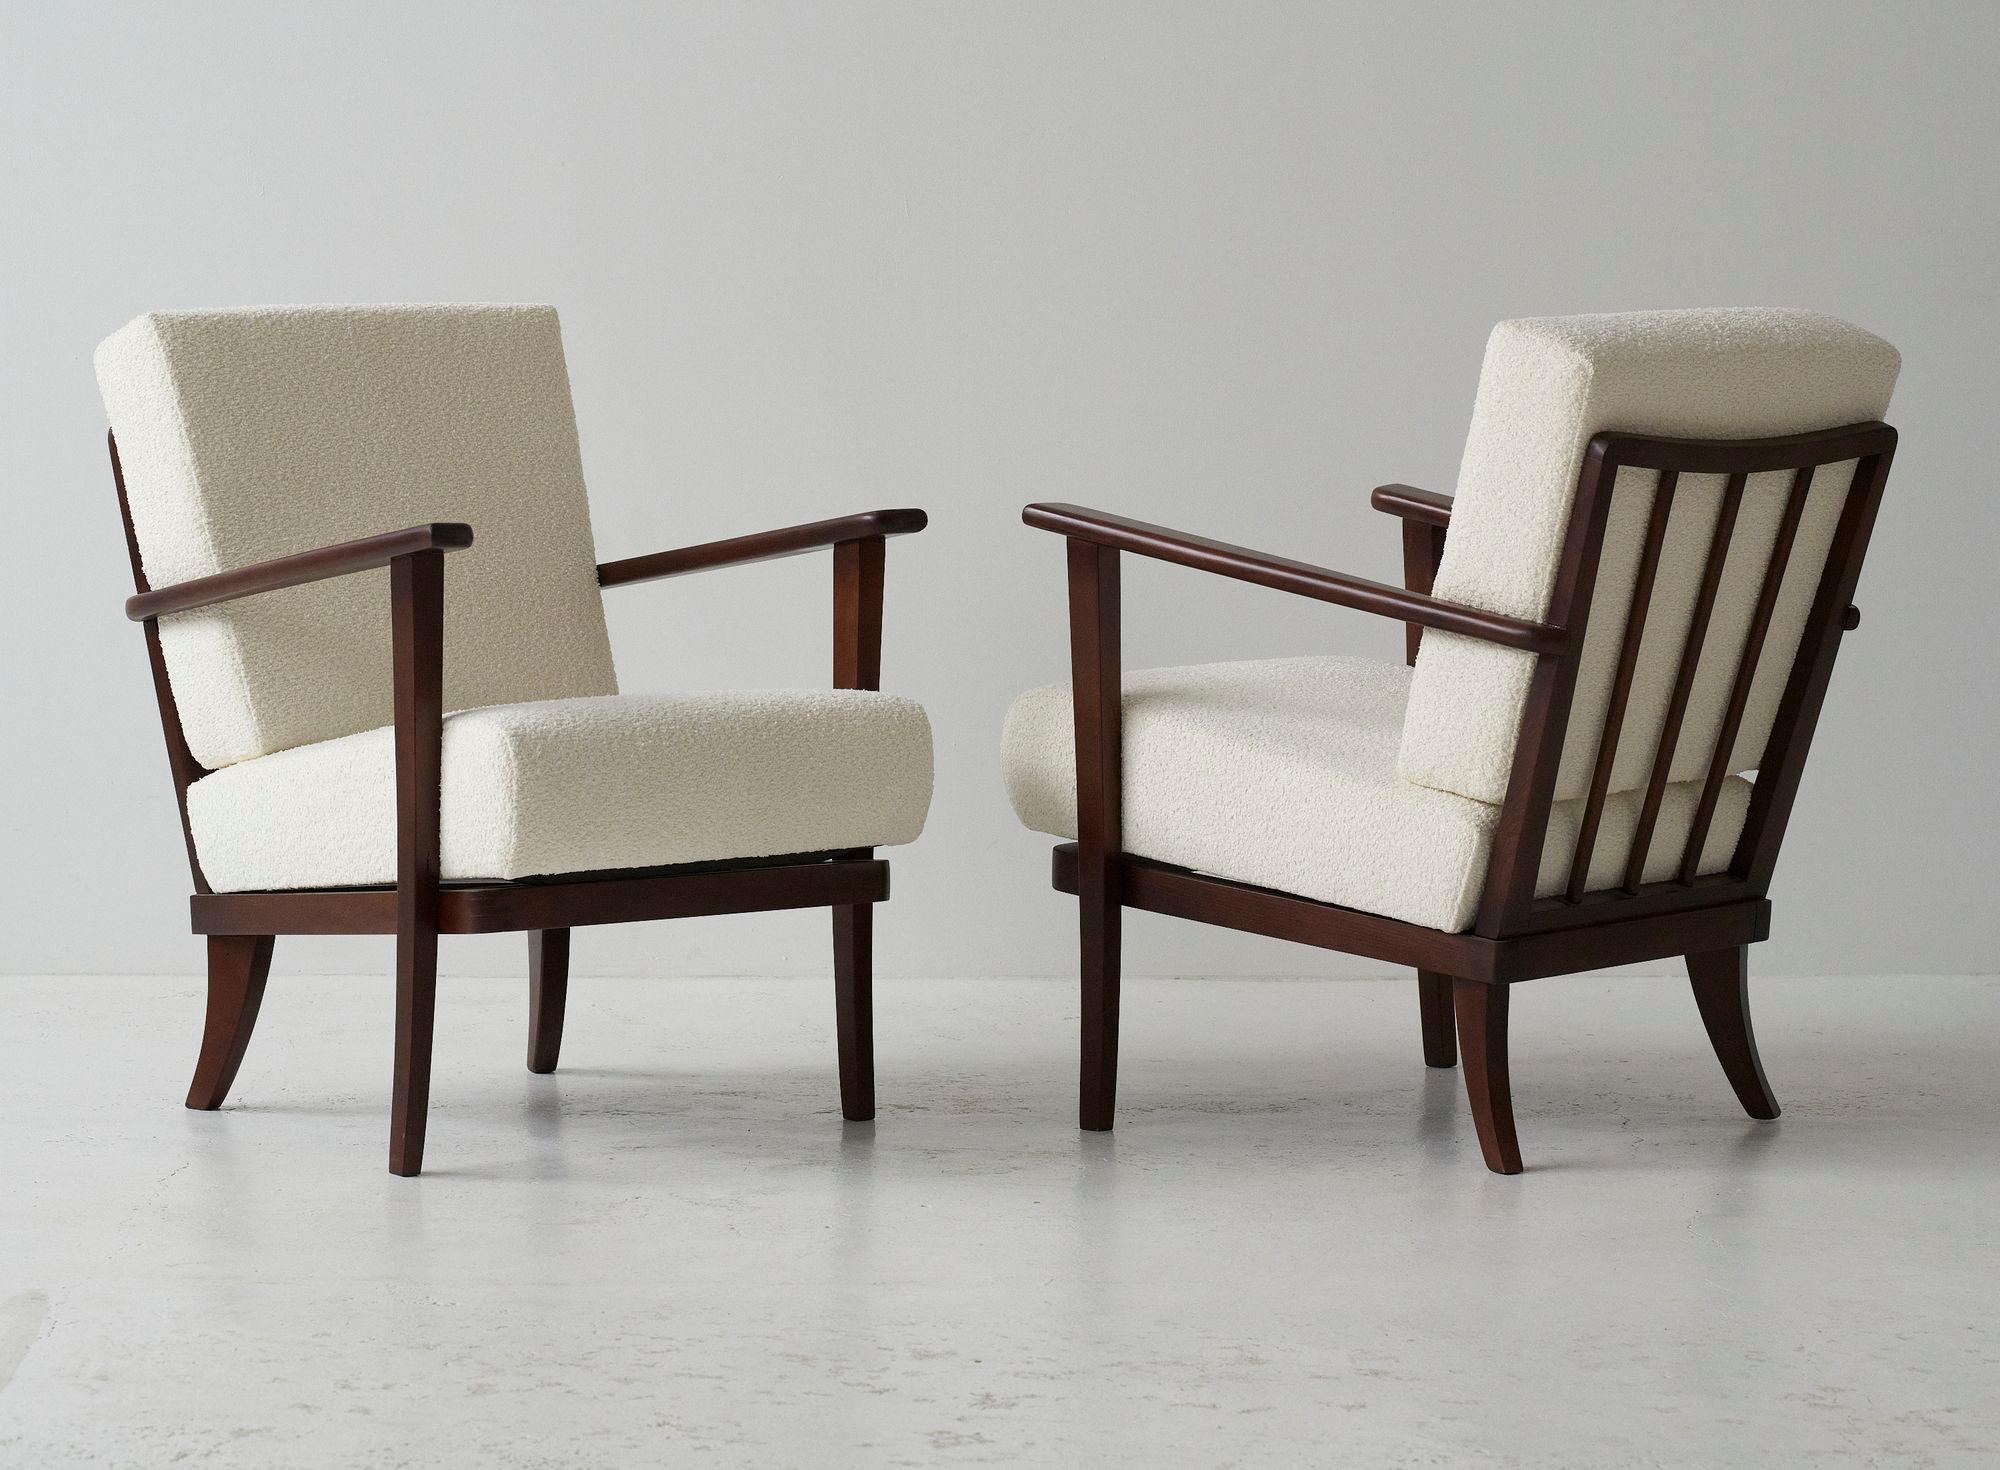 Ensemble de 2 fauteuils produits pour TON dans les années 1960 dans l'ancienne Tchécoslovaquie, comme de nombreux meubles de TON. 
Cadre en bois nettoyé, verni, laqué. Sièges recréés et retapissés dans un tissu boucle crème.